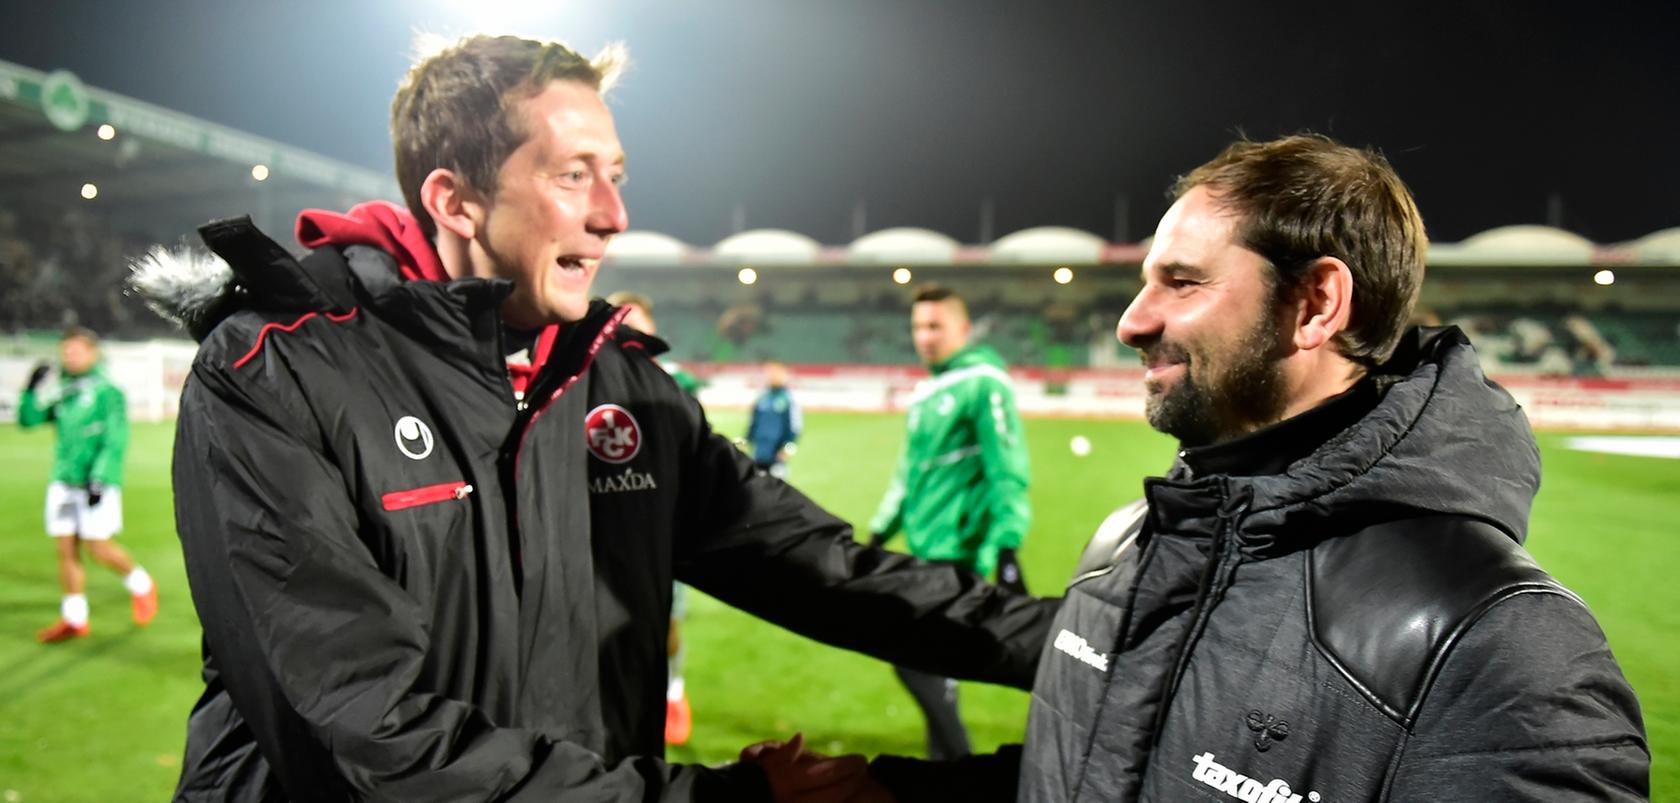 Da war's noch gut: Fürth-Coach Stefan Ruthenbeck begrüßt Ex-Fürther Konrad Fünfstück, der beim FCK inzwischen kein Cheftrainer mehr ist.